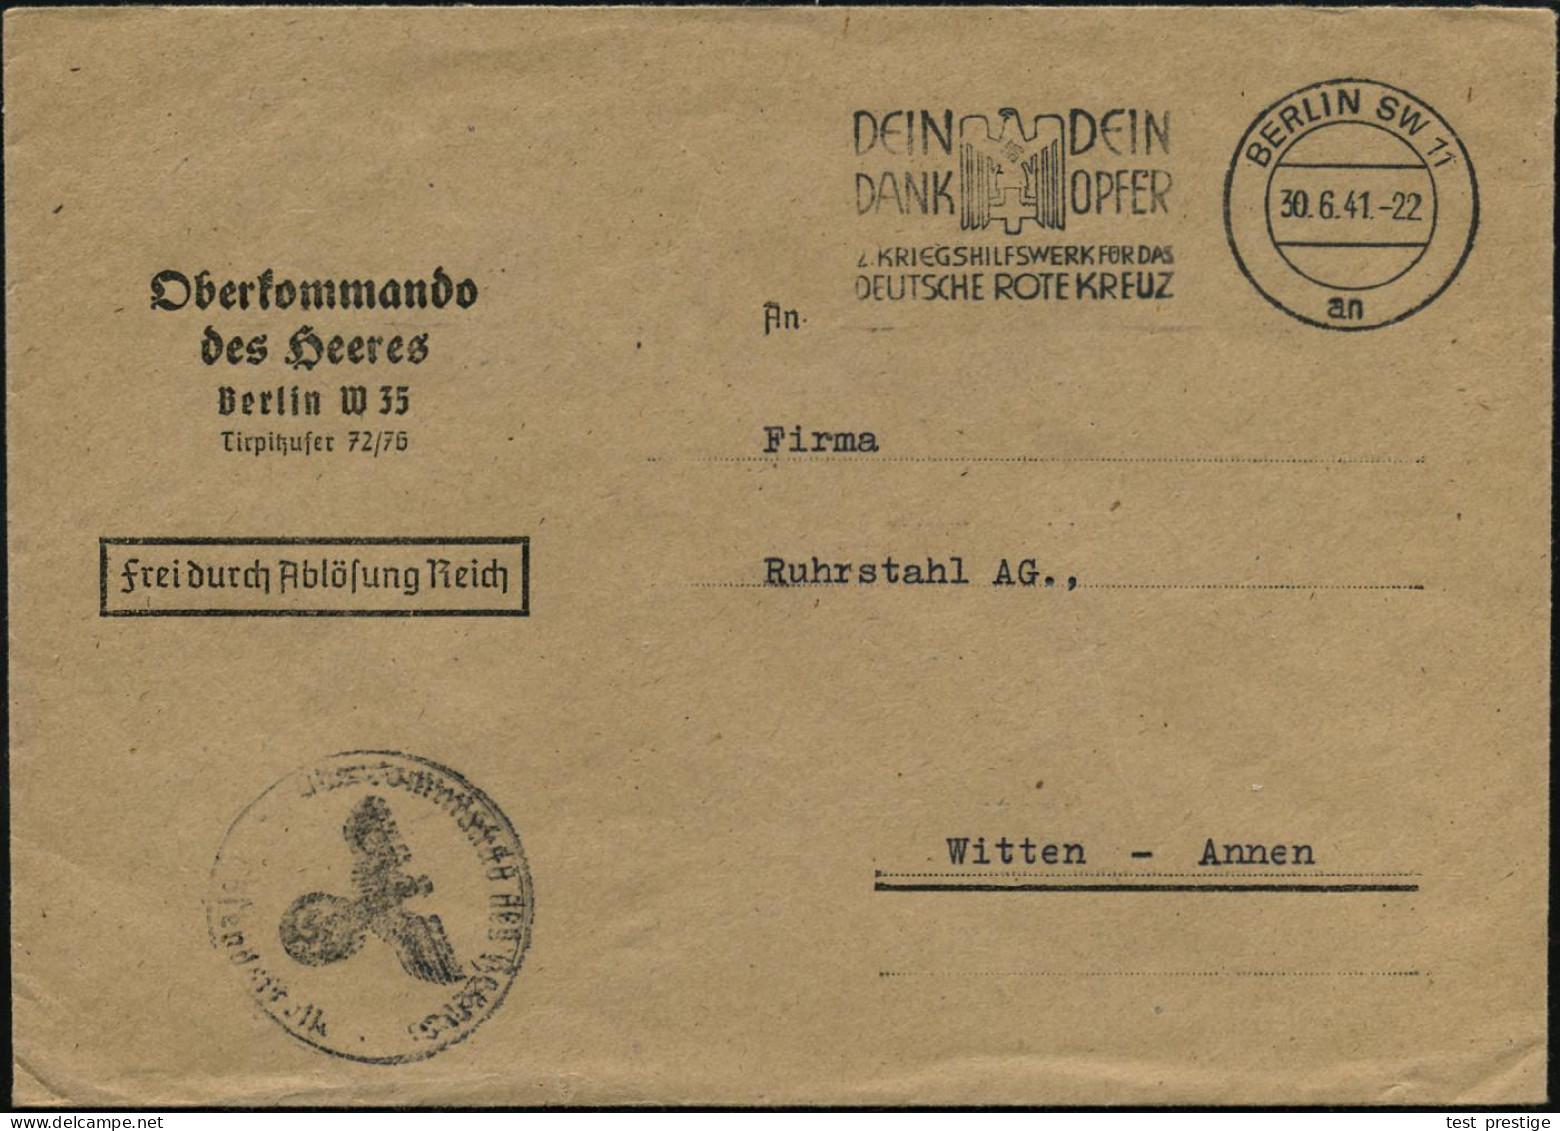 BERLIN SW11/ An/ ..2.KRIEGSWHW FÜR DAS/ DEUTSCHE ROTE KREUZ 1941 (30.6.) MWSt (RK-Logo) Dienst-Bf.: Oberkommando Des  He - 2. Weltkrieg